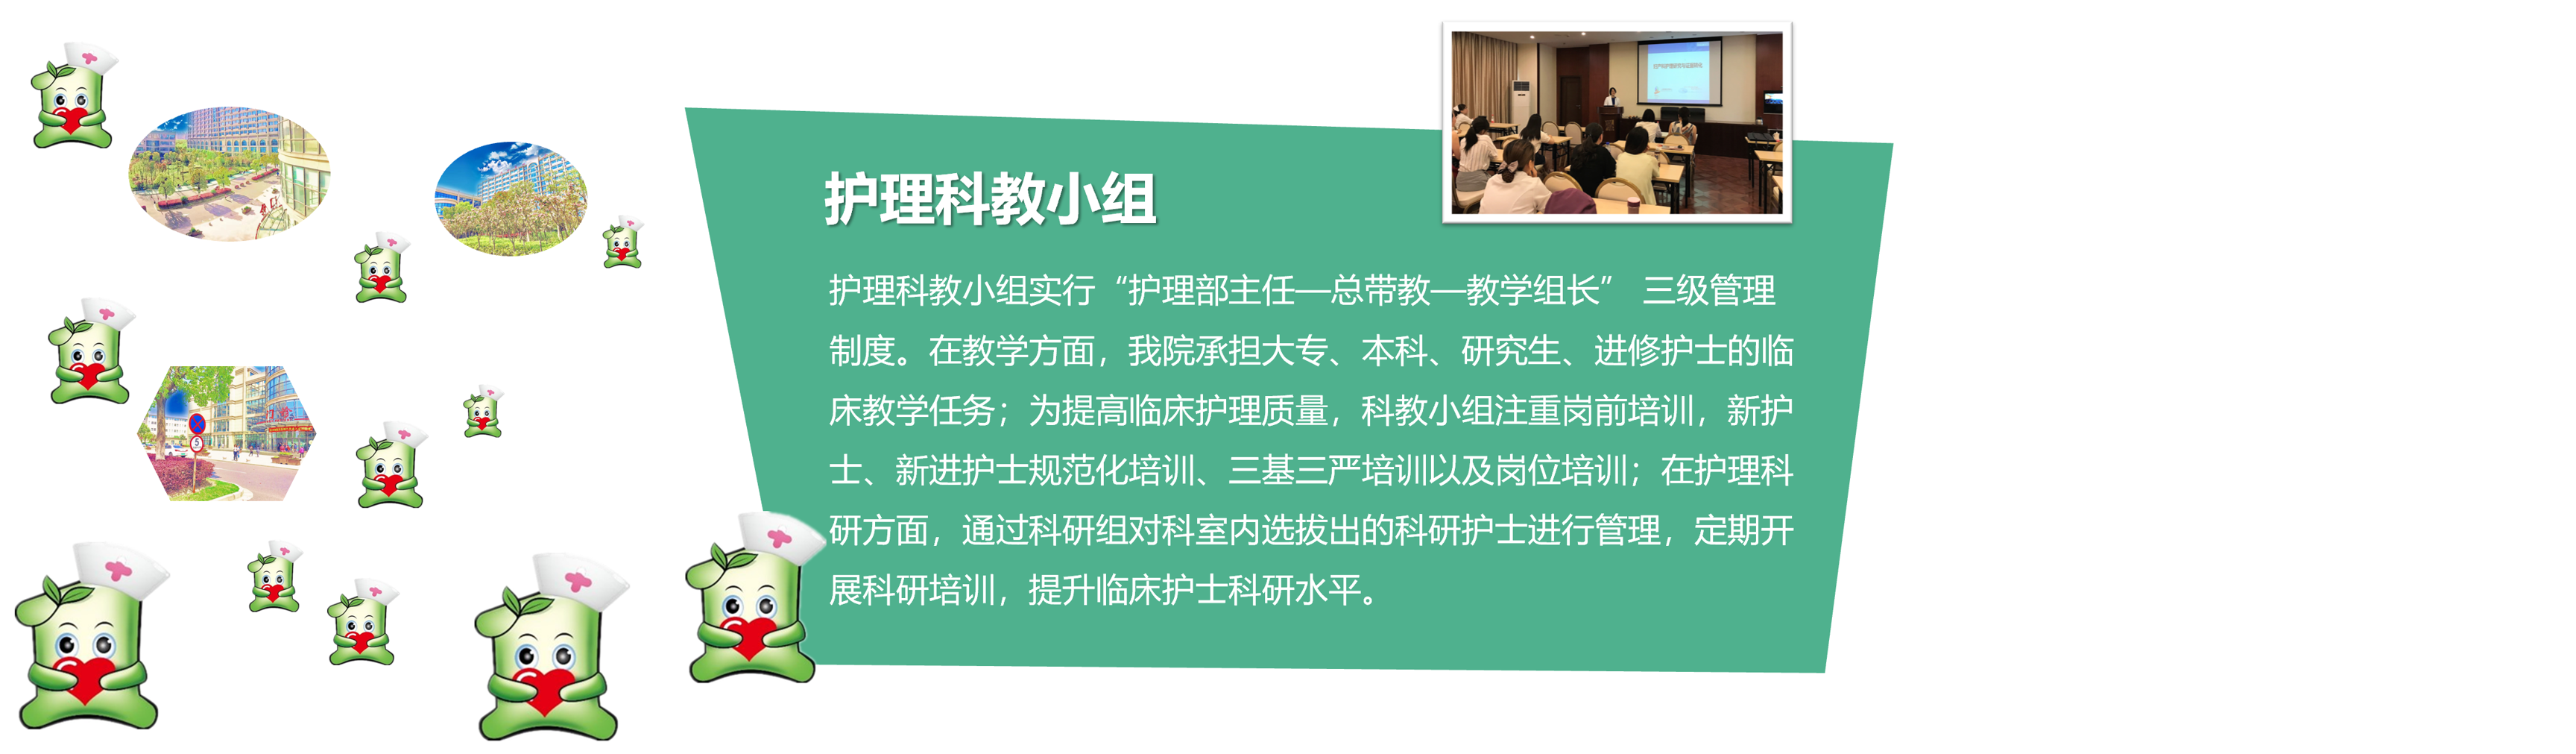 上海市第一妇婴保健院第二冠名更名为同济大学附属妇产科医院_发展_创新_妇幼保健院